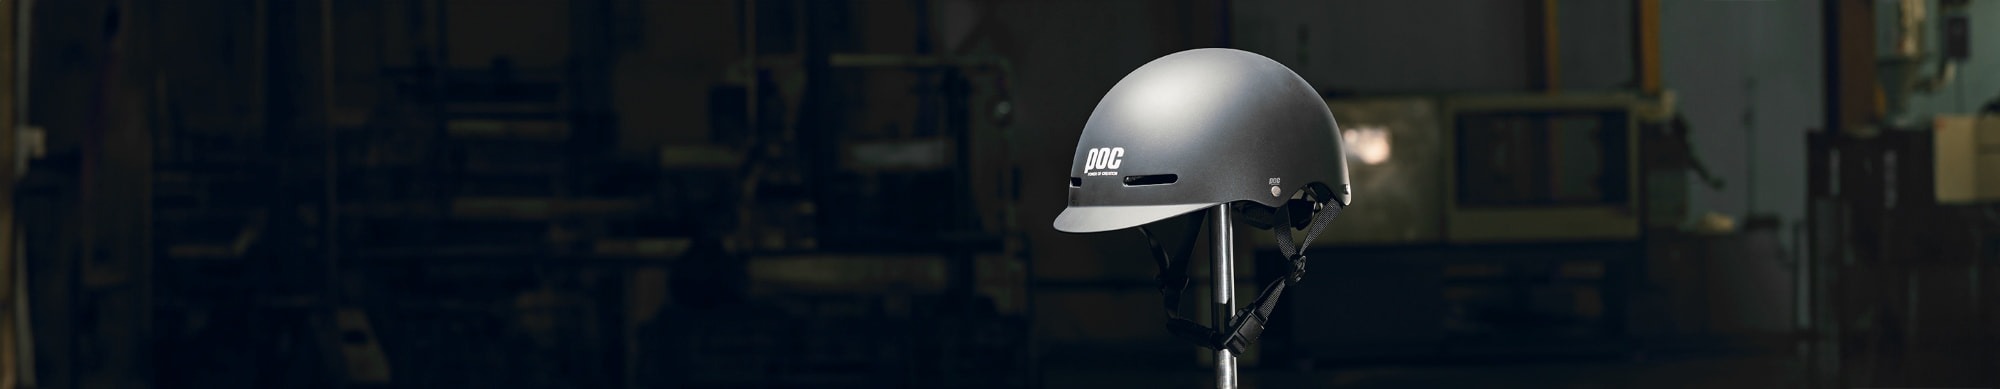 Danh mục nón bảo hiểm xe máy POC Helmets